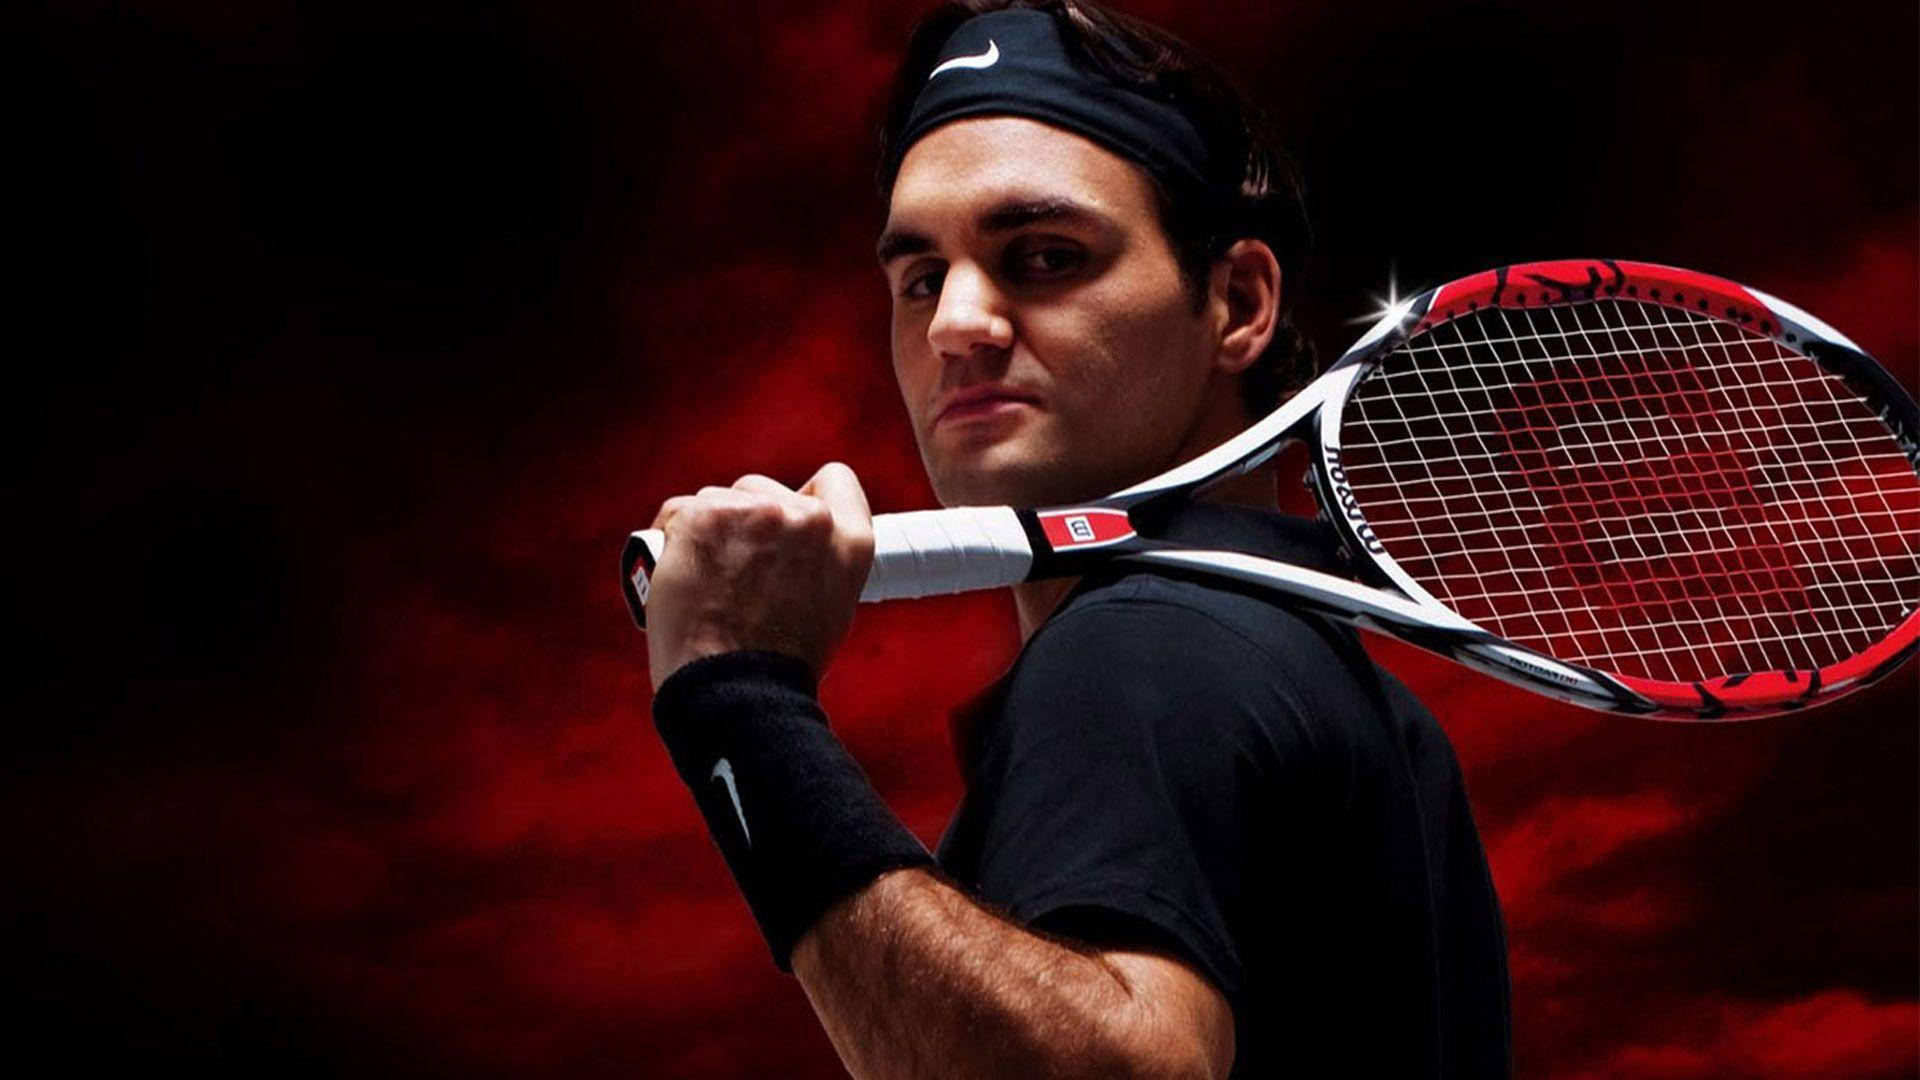 Roger Federer Wilson Tennis Poster Background